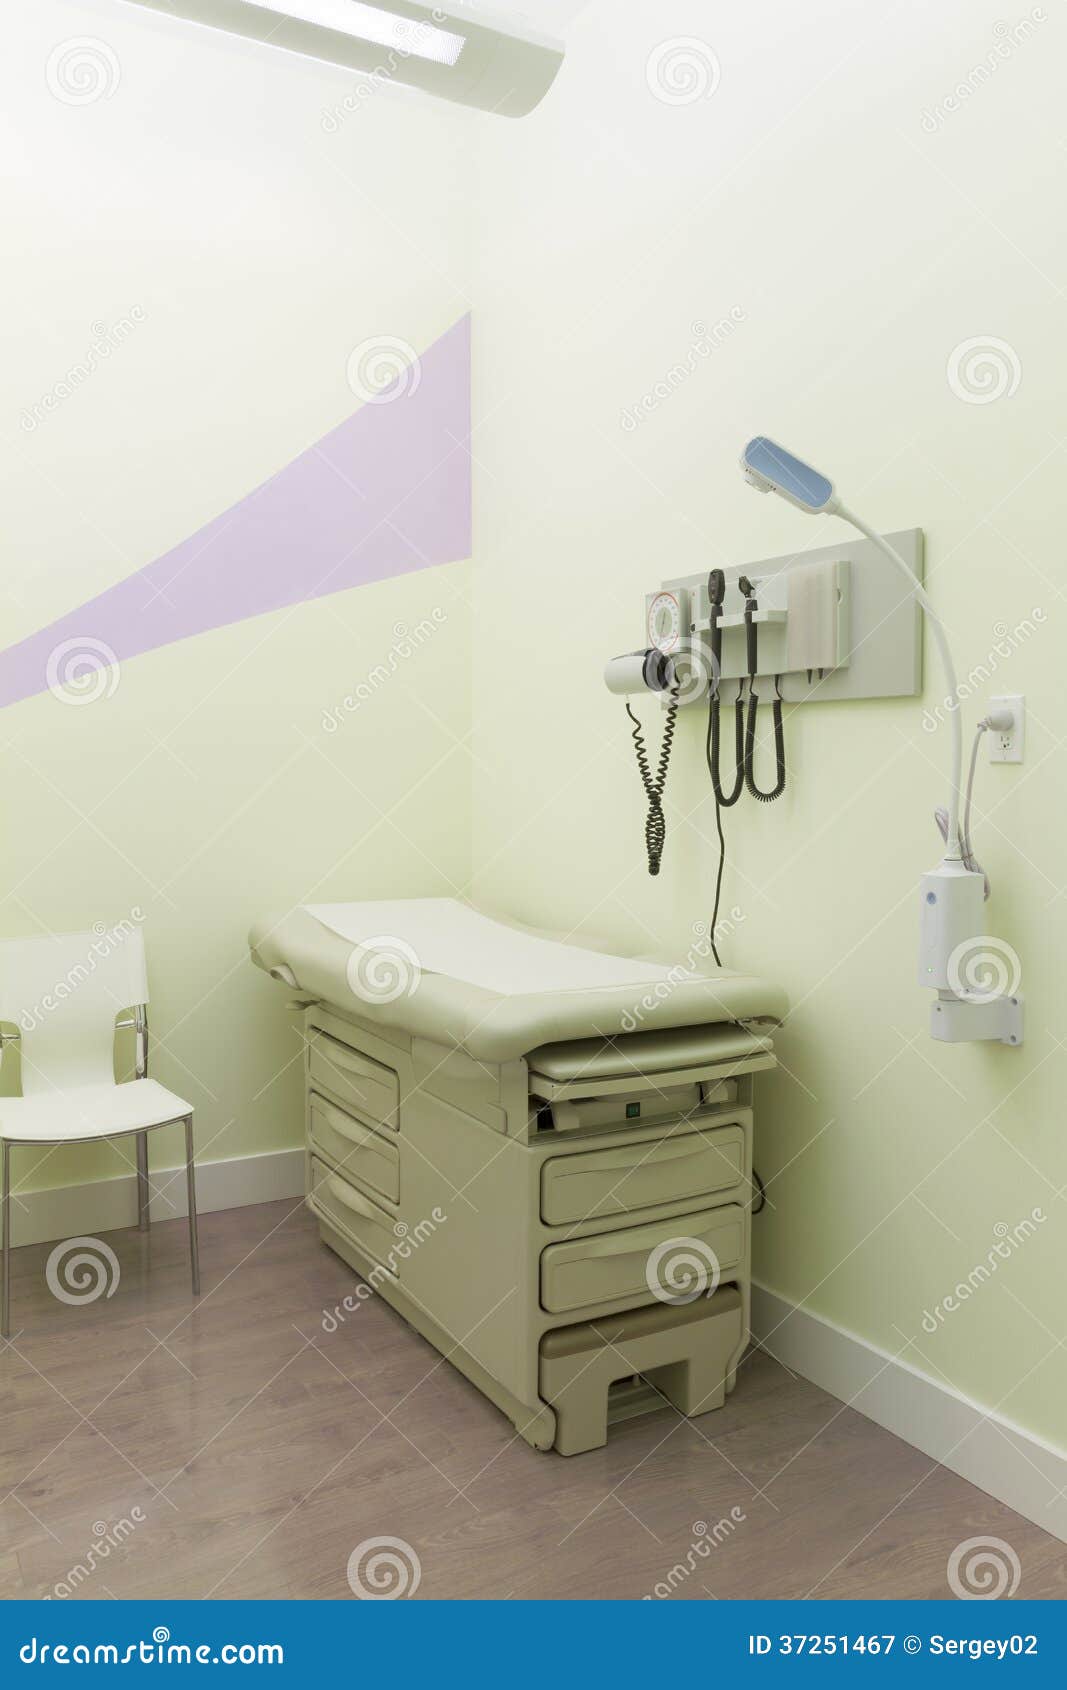 doctors room